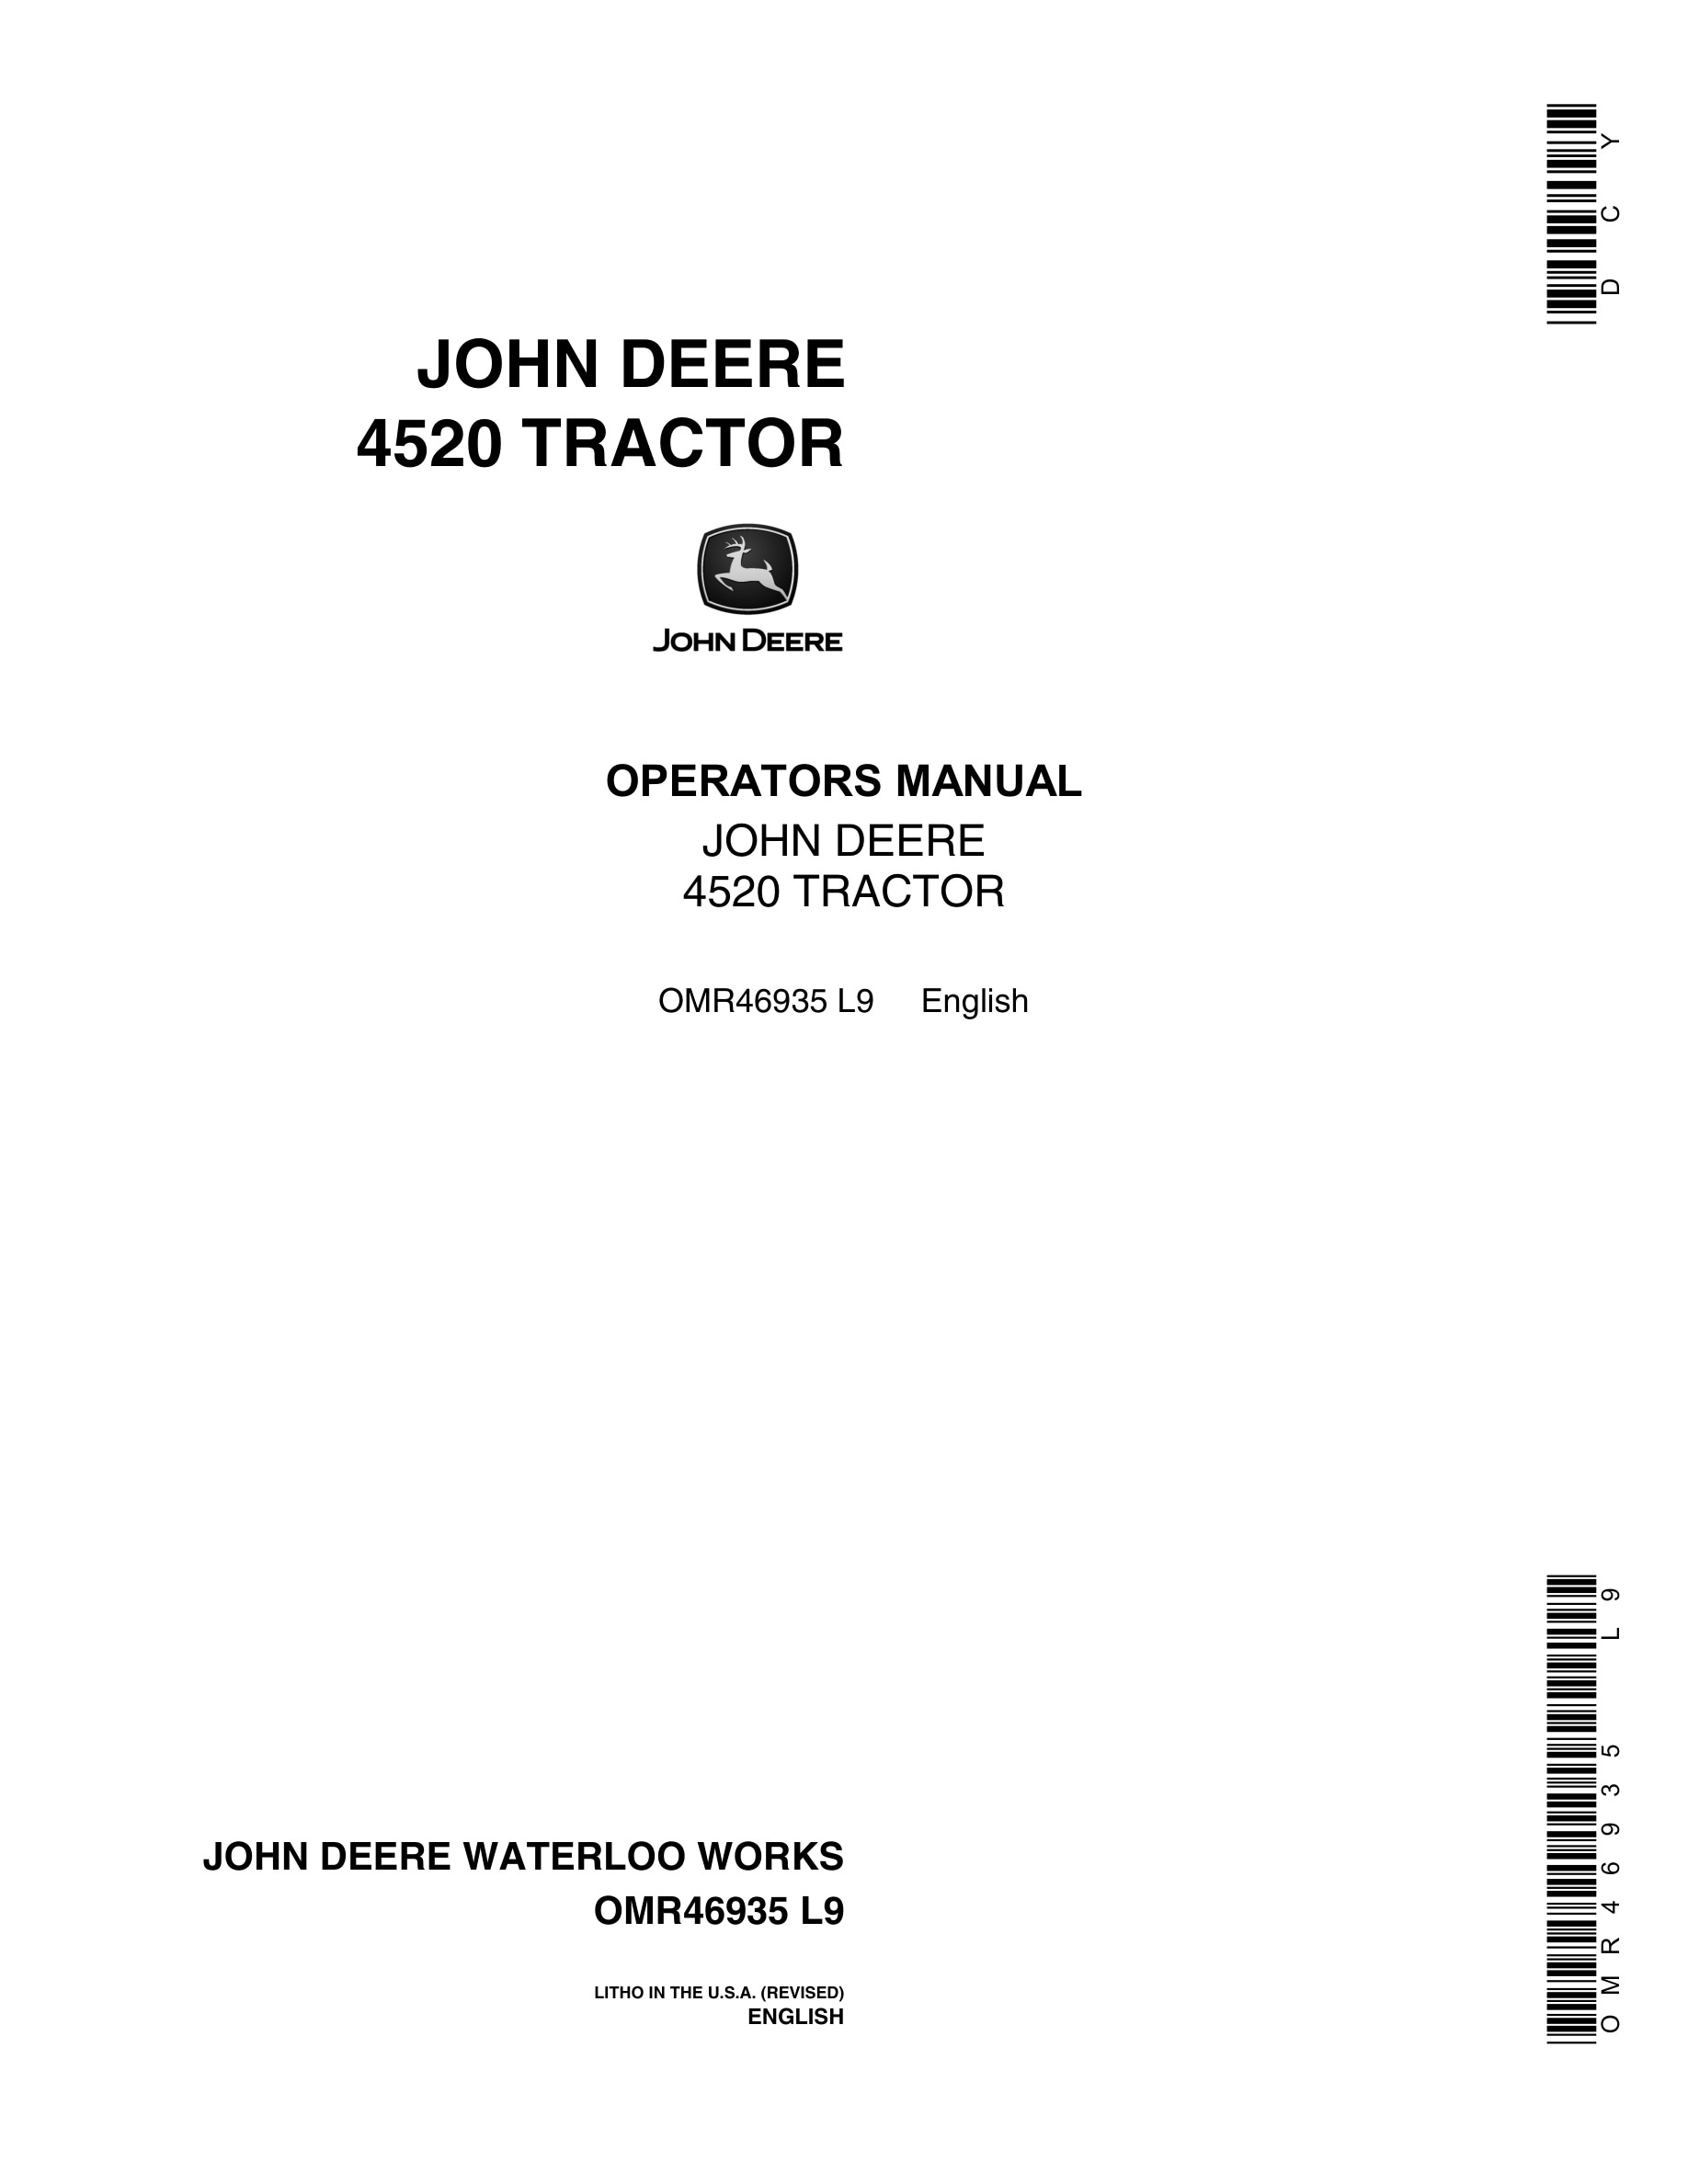 John Deere 4520 Tractor Operator Manual OMR46935-1